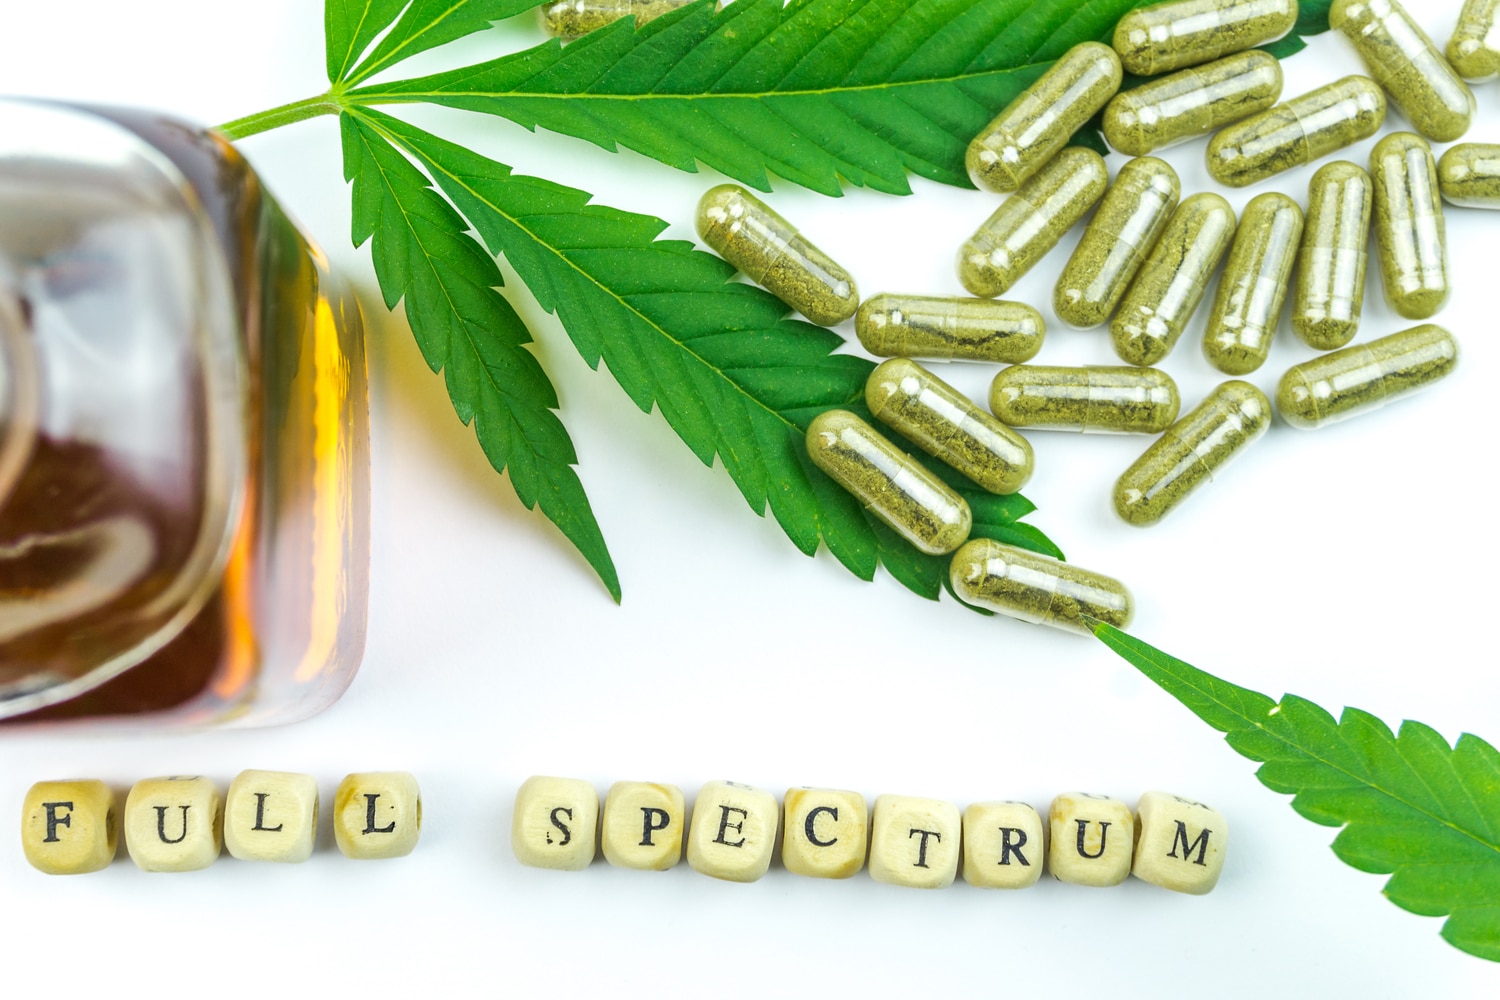 Full spectrum cannabis visual